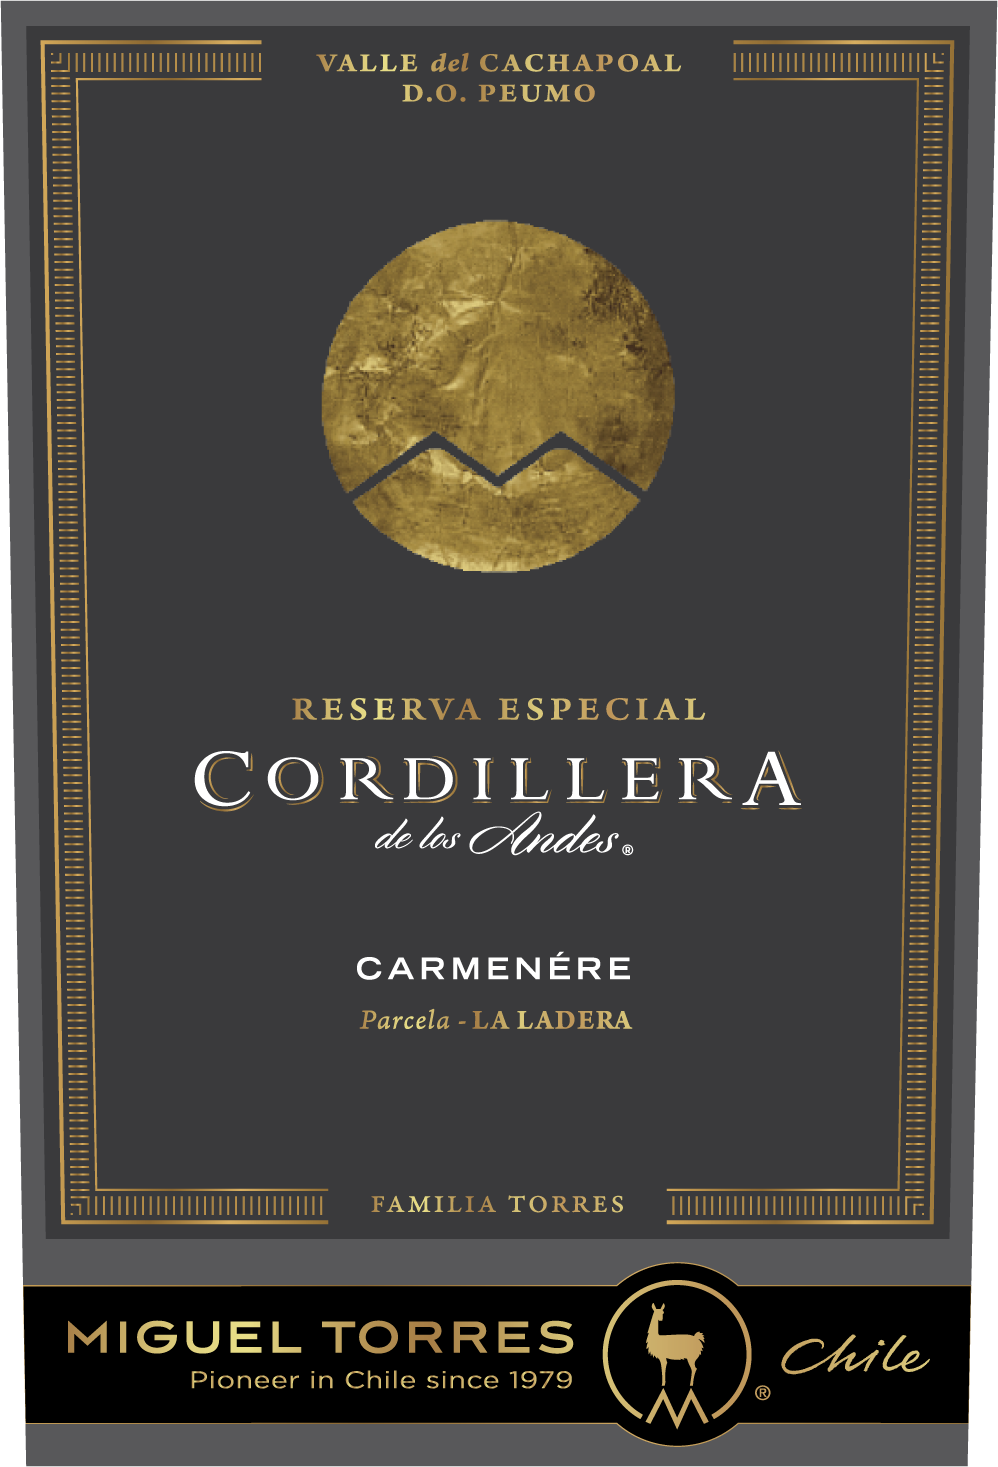 Carmenere Wine - Learn About & Buy Online